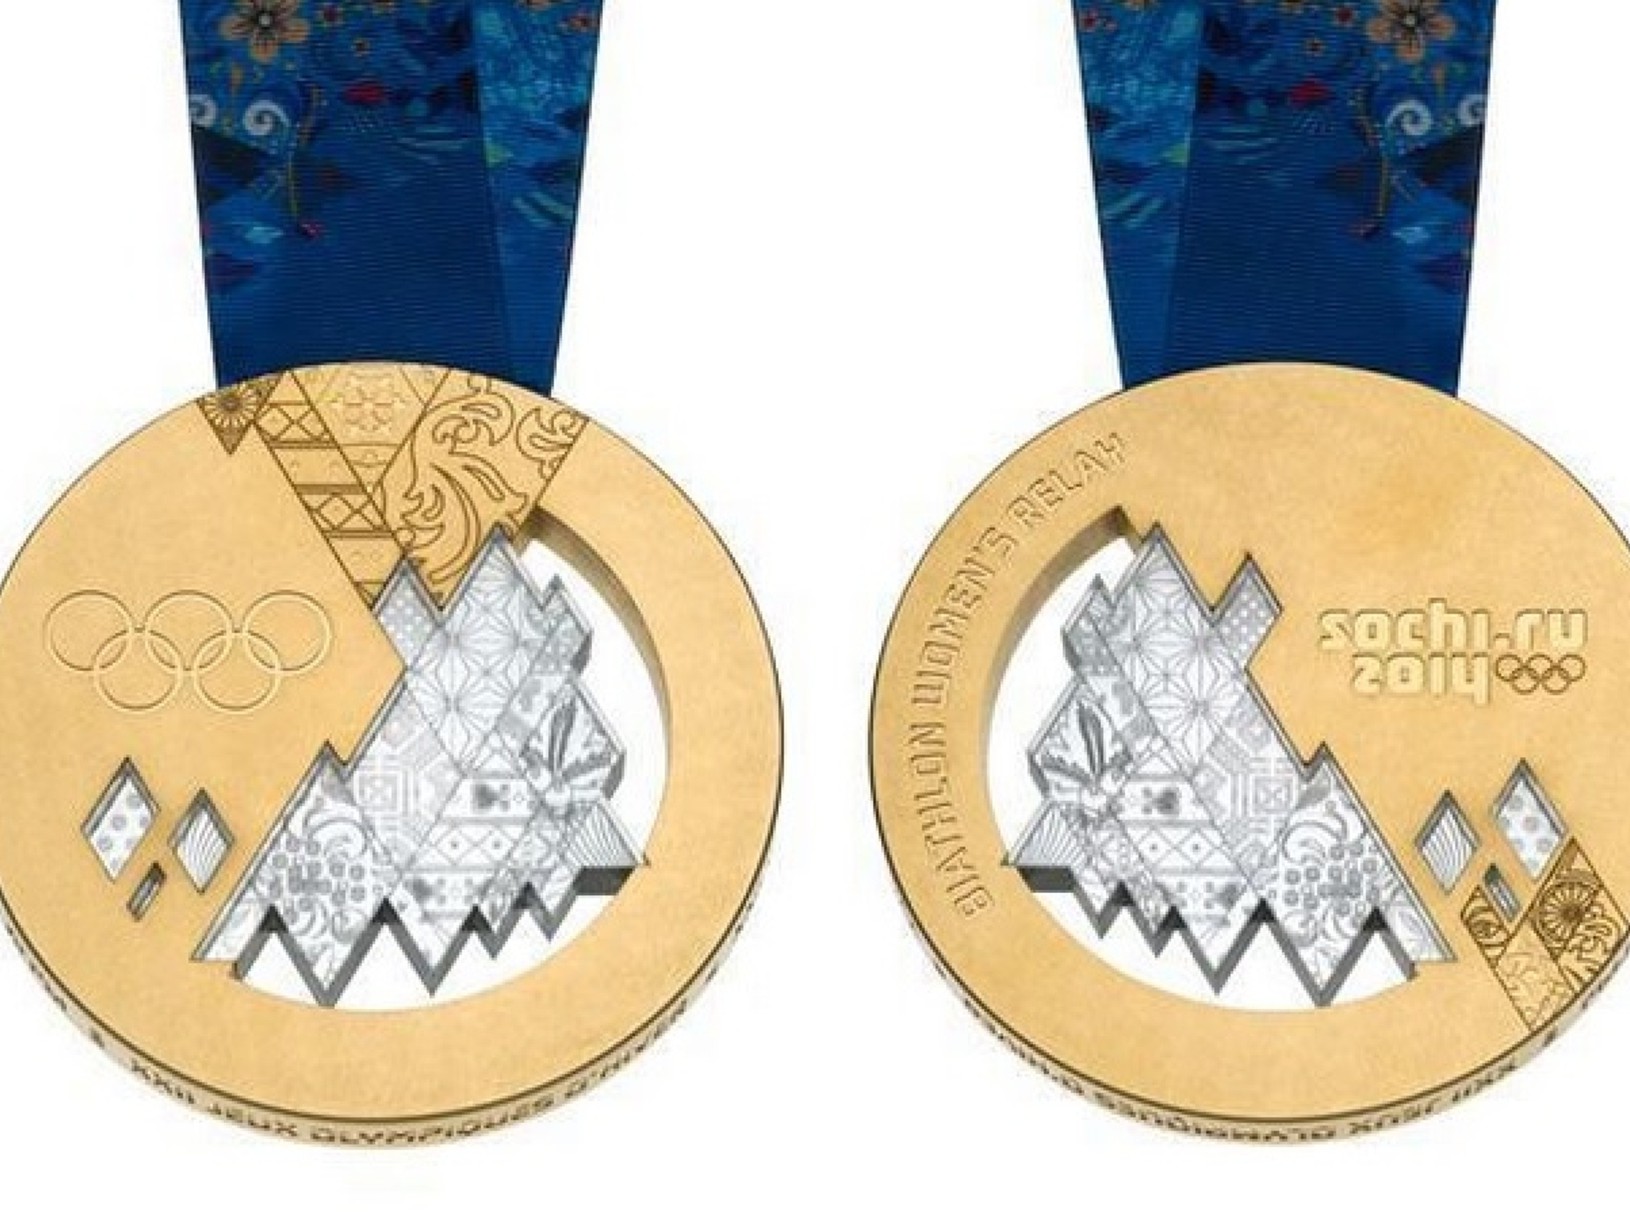 Zlaté olympijské medaily, o